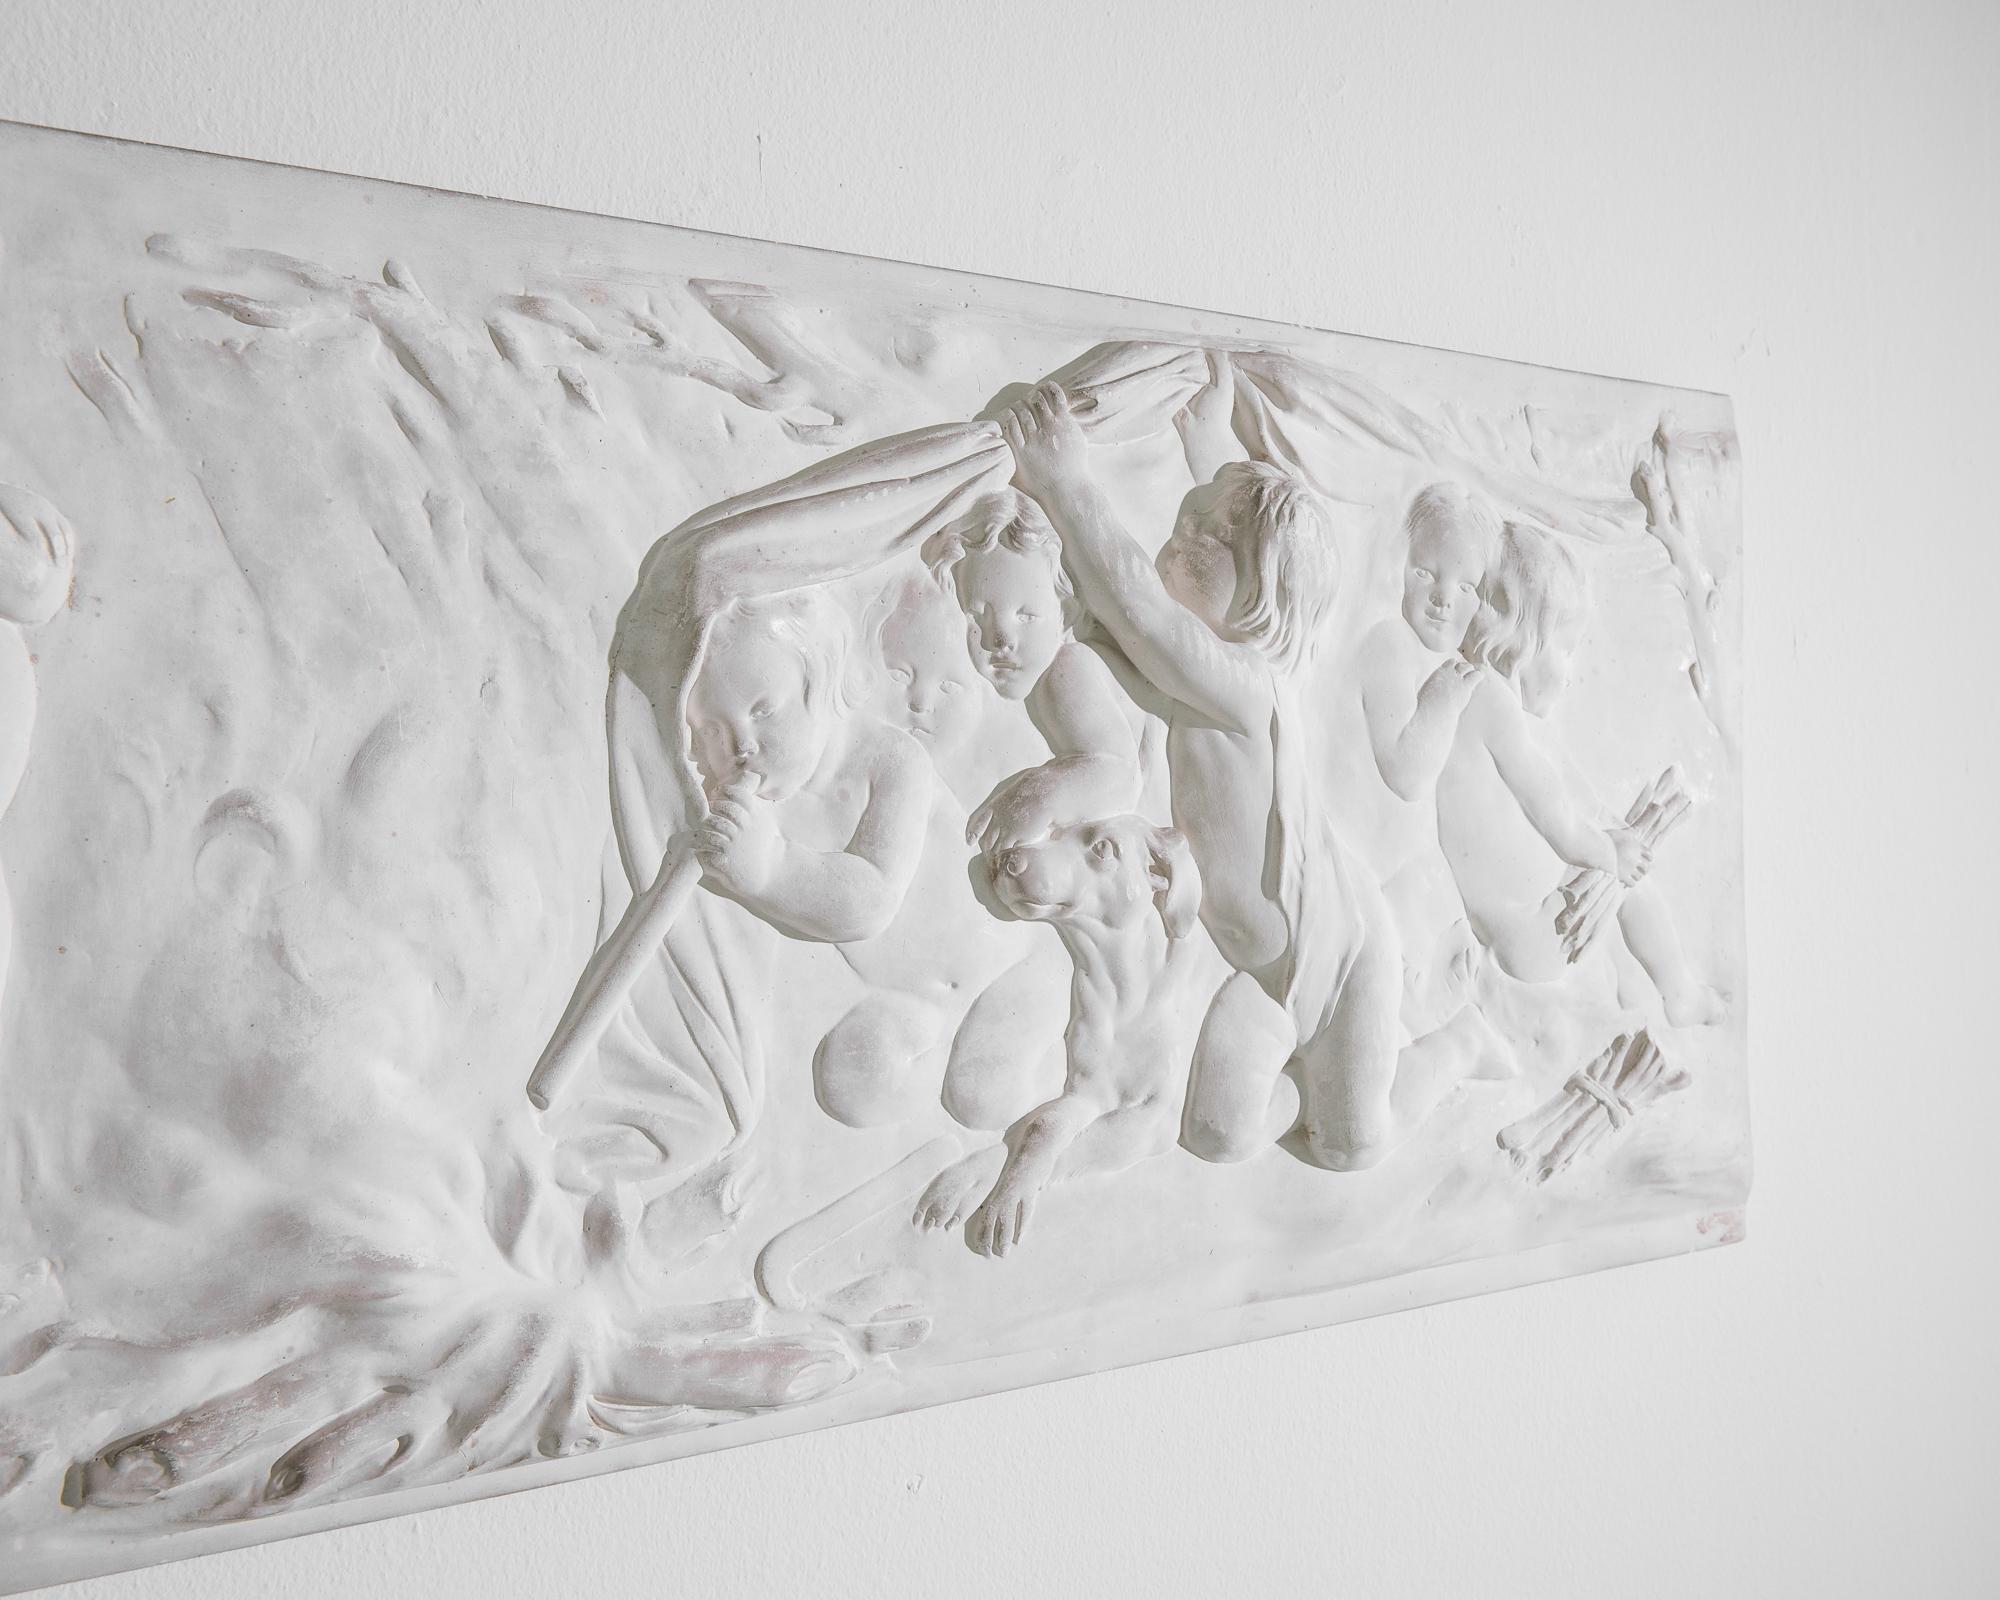 Sculpture en relief réalisée en plâtre, produite en France vers 1930. Une scène onirique de bambins se dandinant dans les bois, jouant sans surveillance : ils font tout, depuis dormir dans les broussailles jusqu'à faire du feu. La pureté de